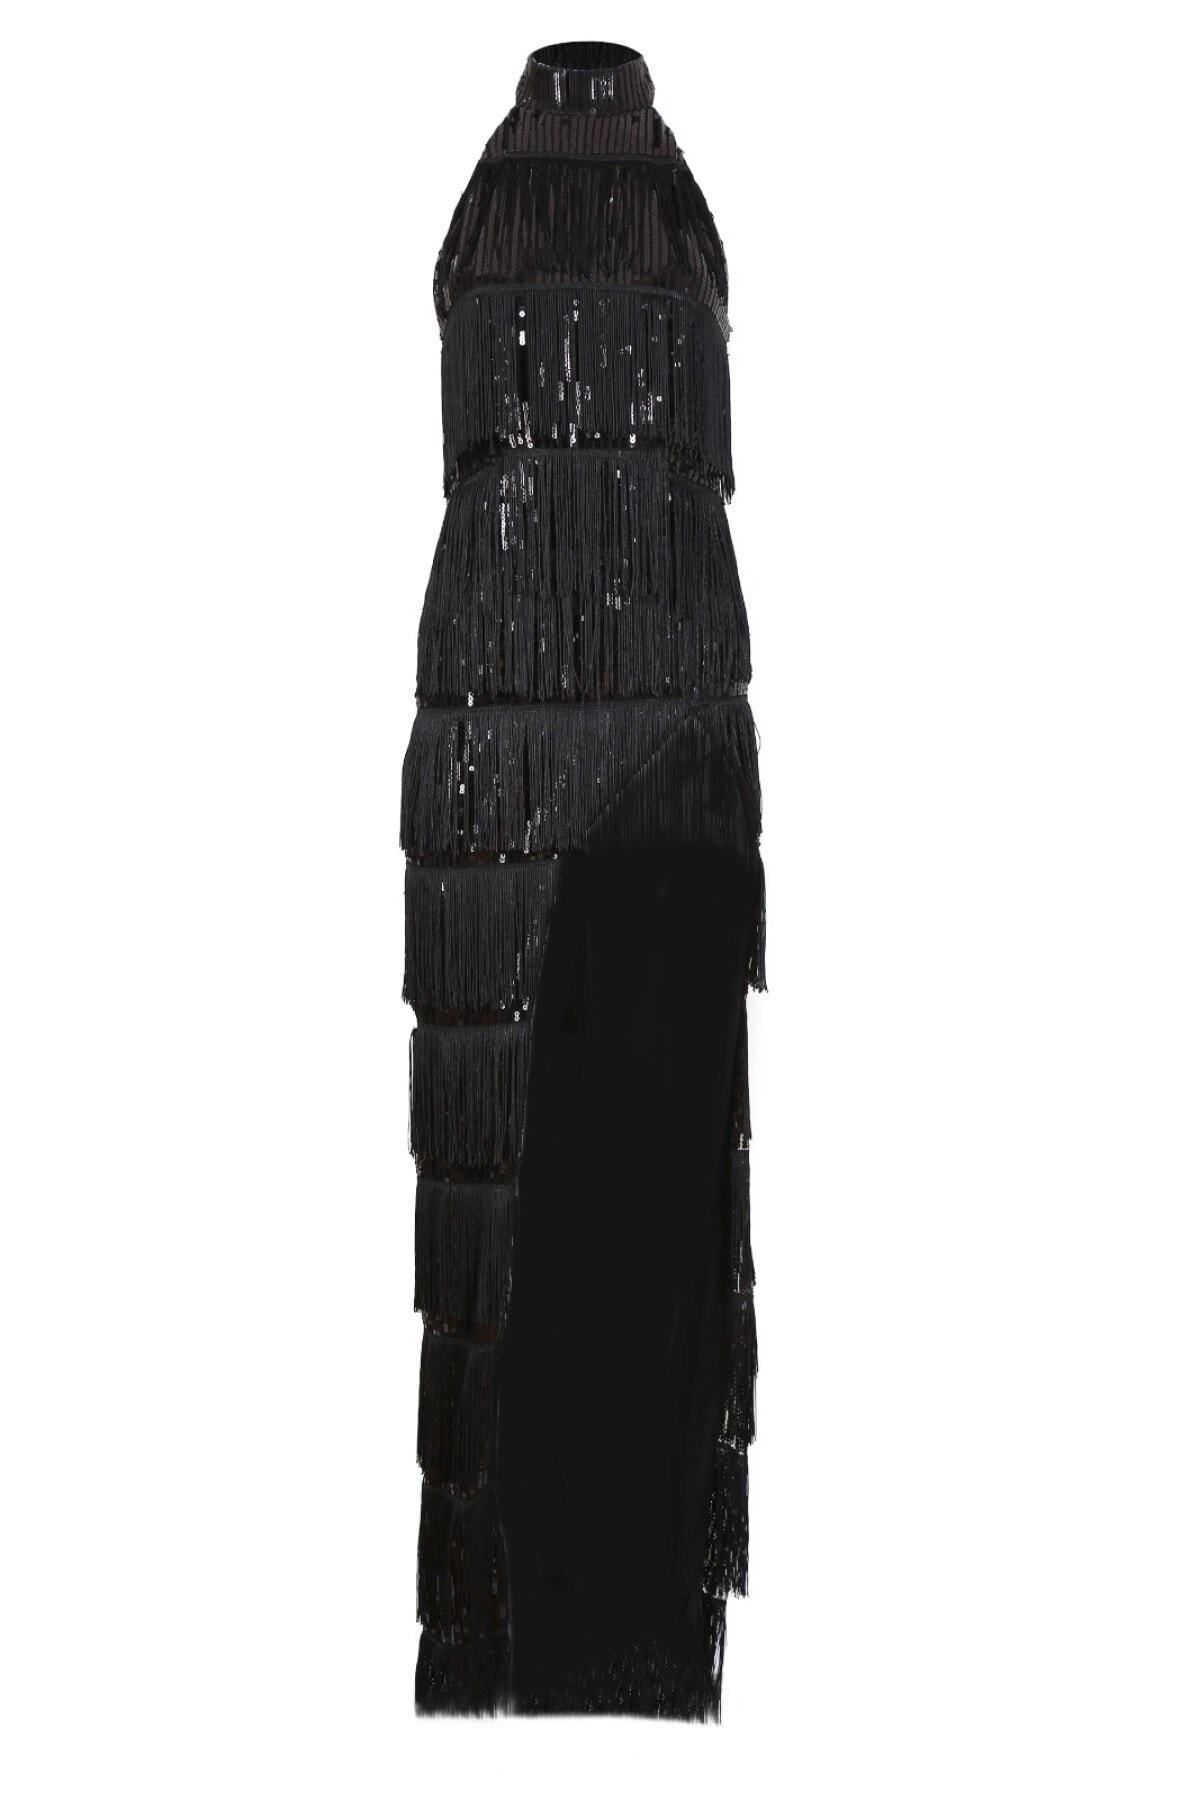 Rheme And Fons Özel Tasarım Couture El Işçiliği Siyah Abiye Elbise